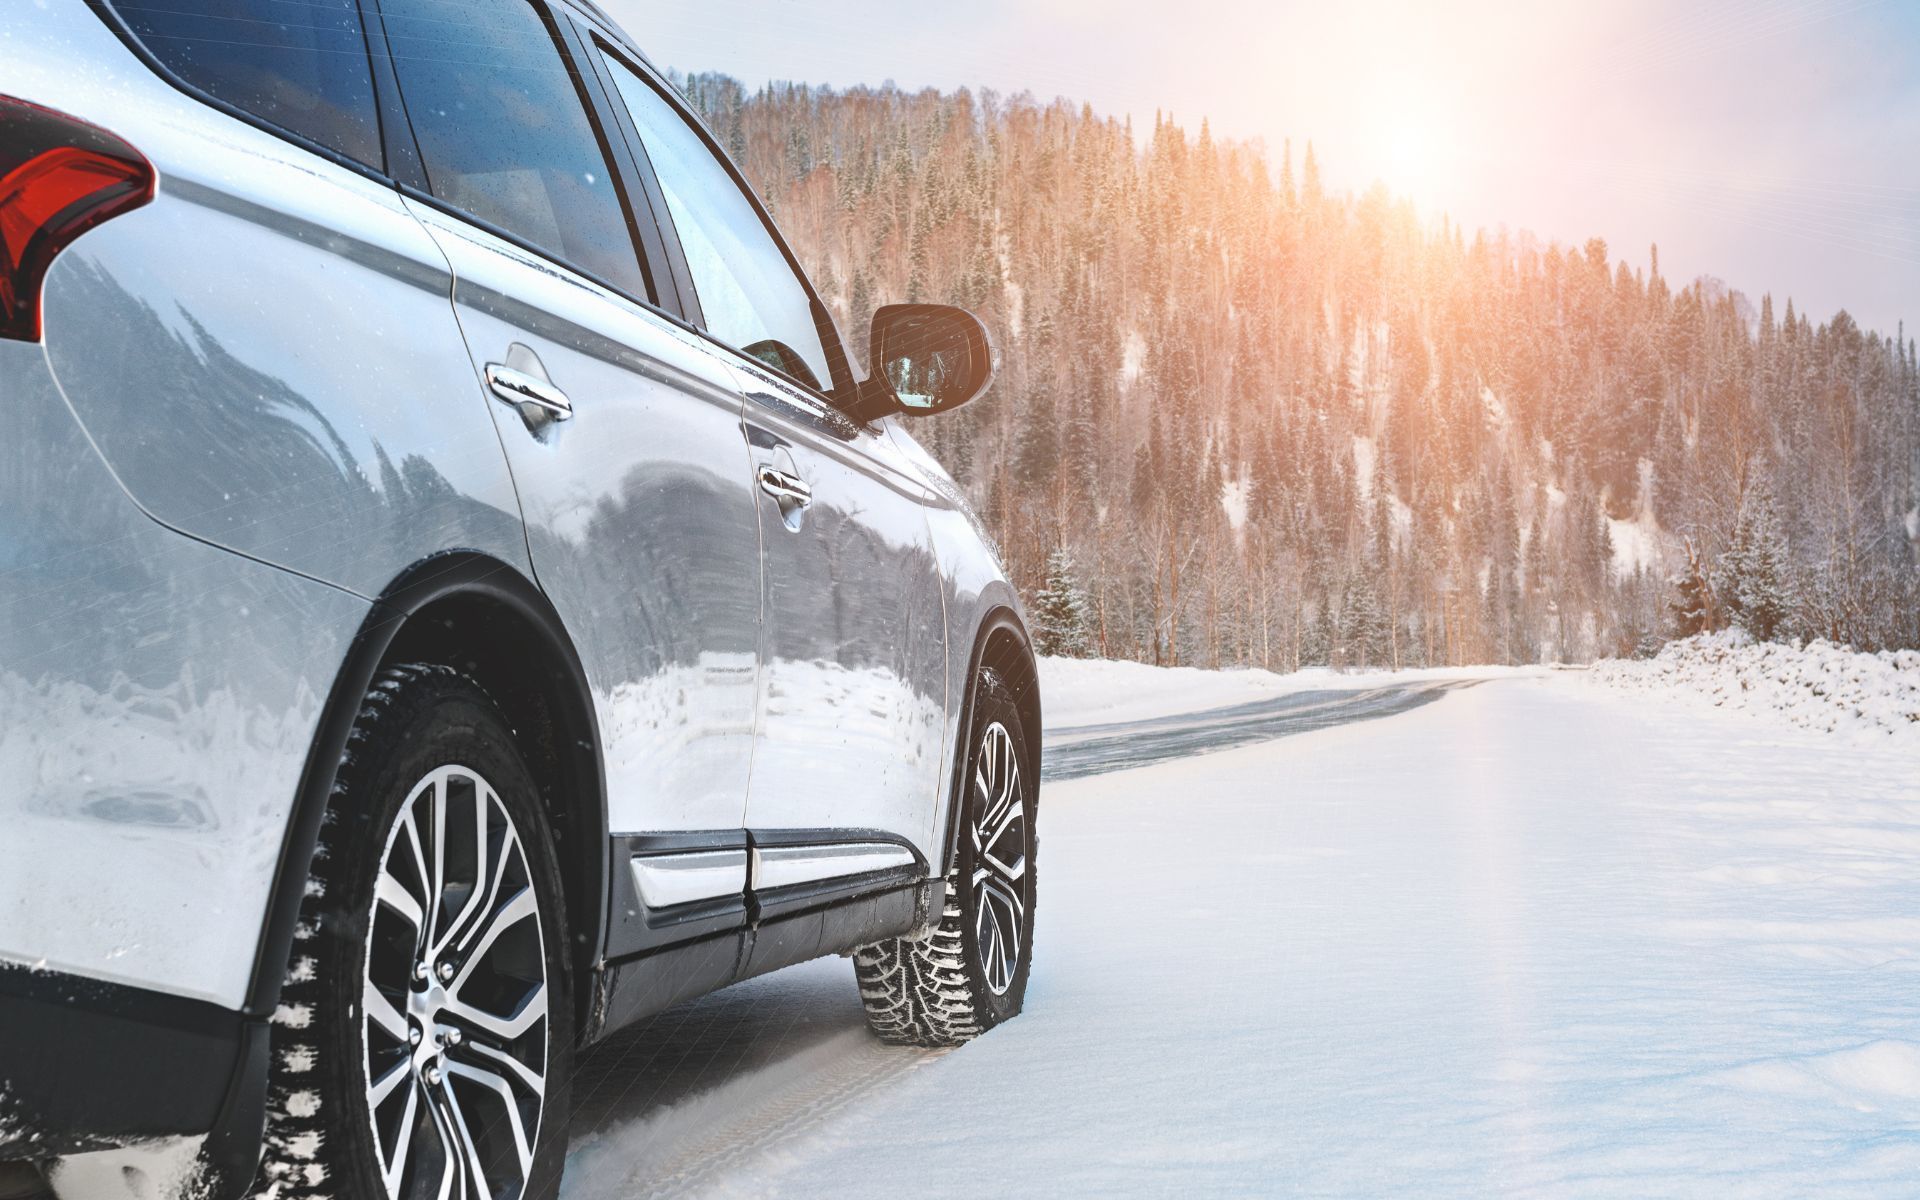 Préparer votre véhicule pour l'hiver en 8 étapes simples.